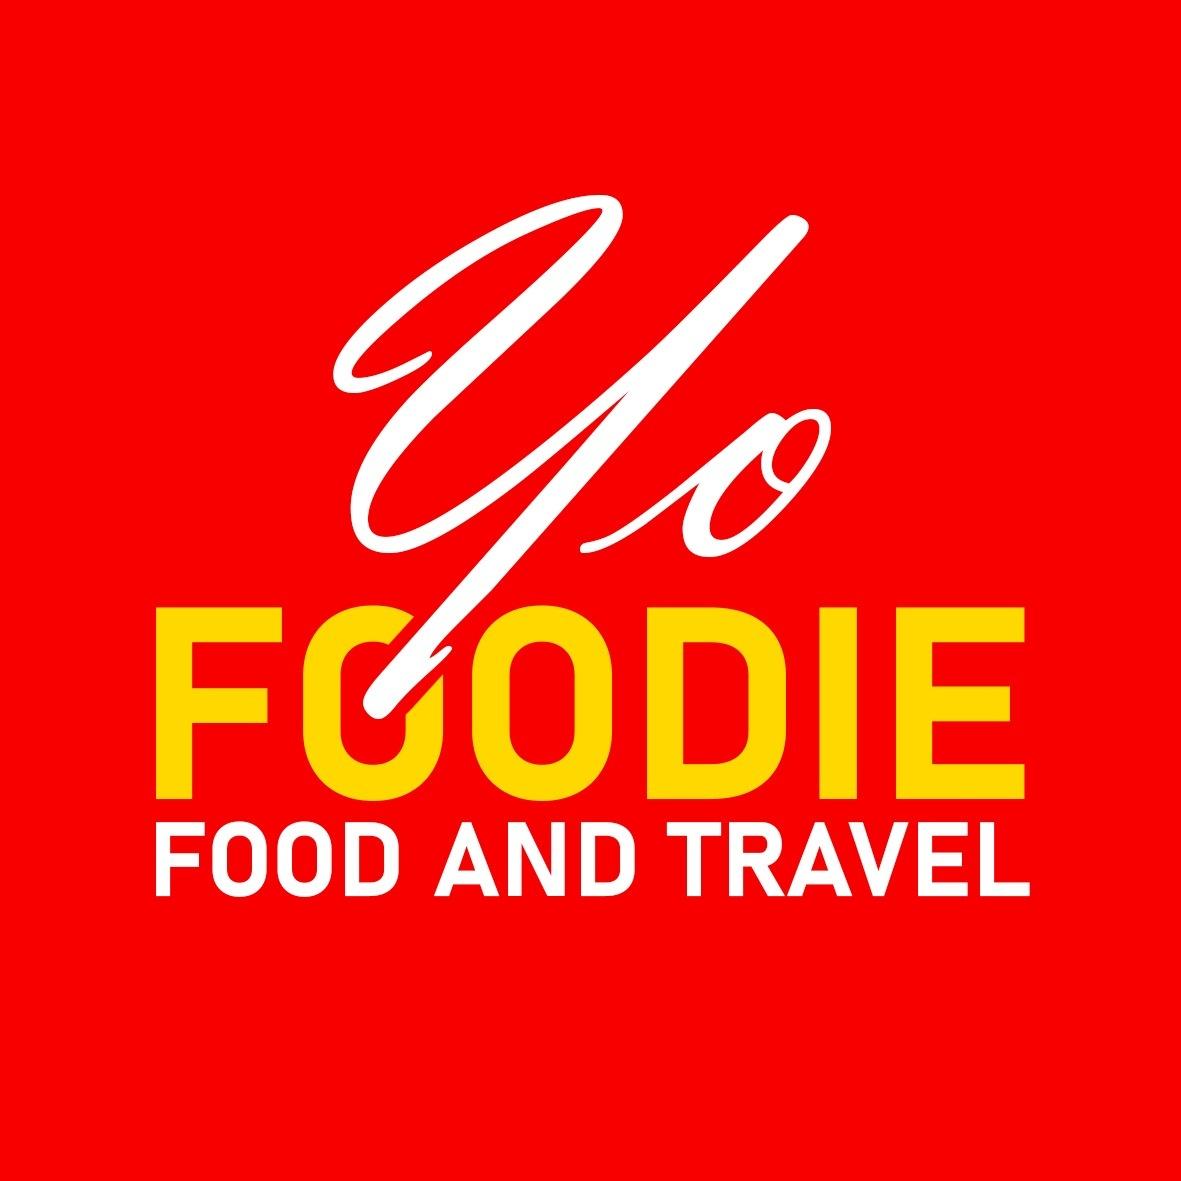 Yo Foodie's images